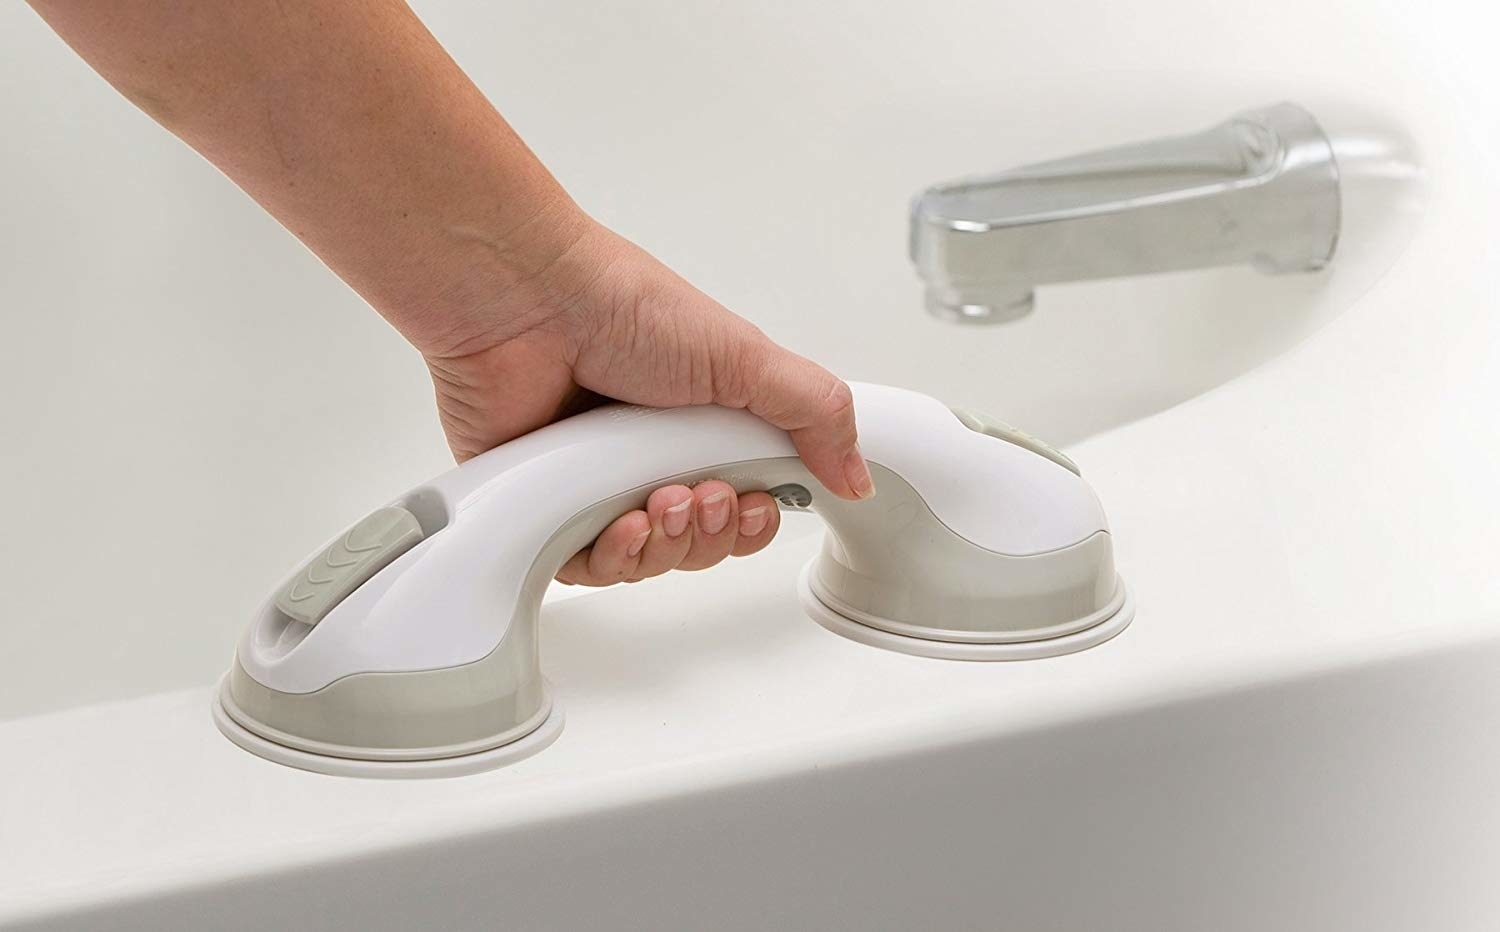 A hand gripping handle on bathtub ledge